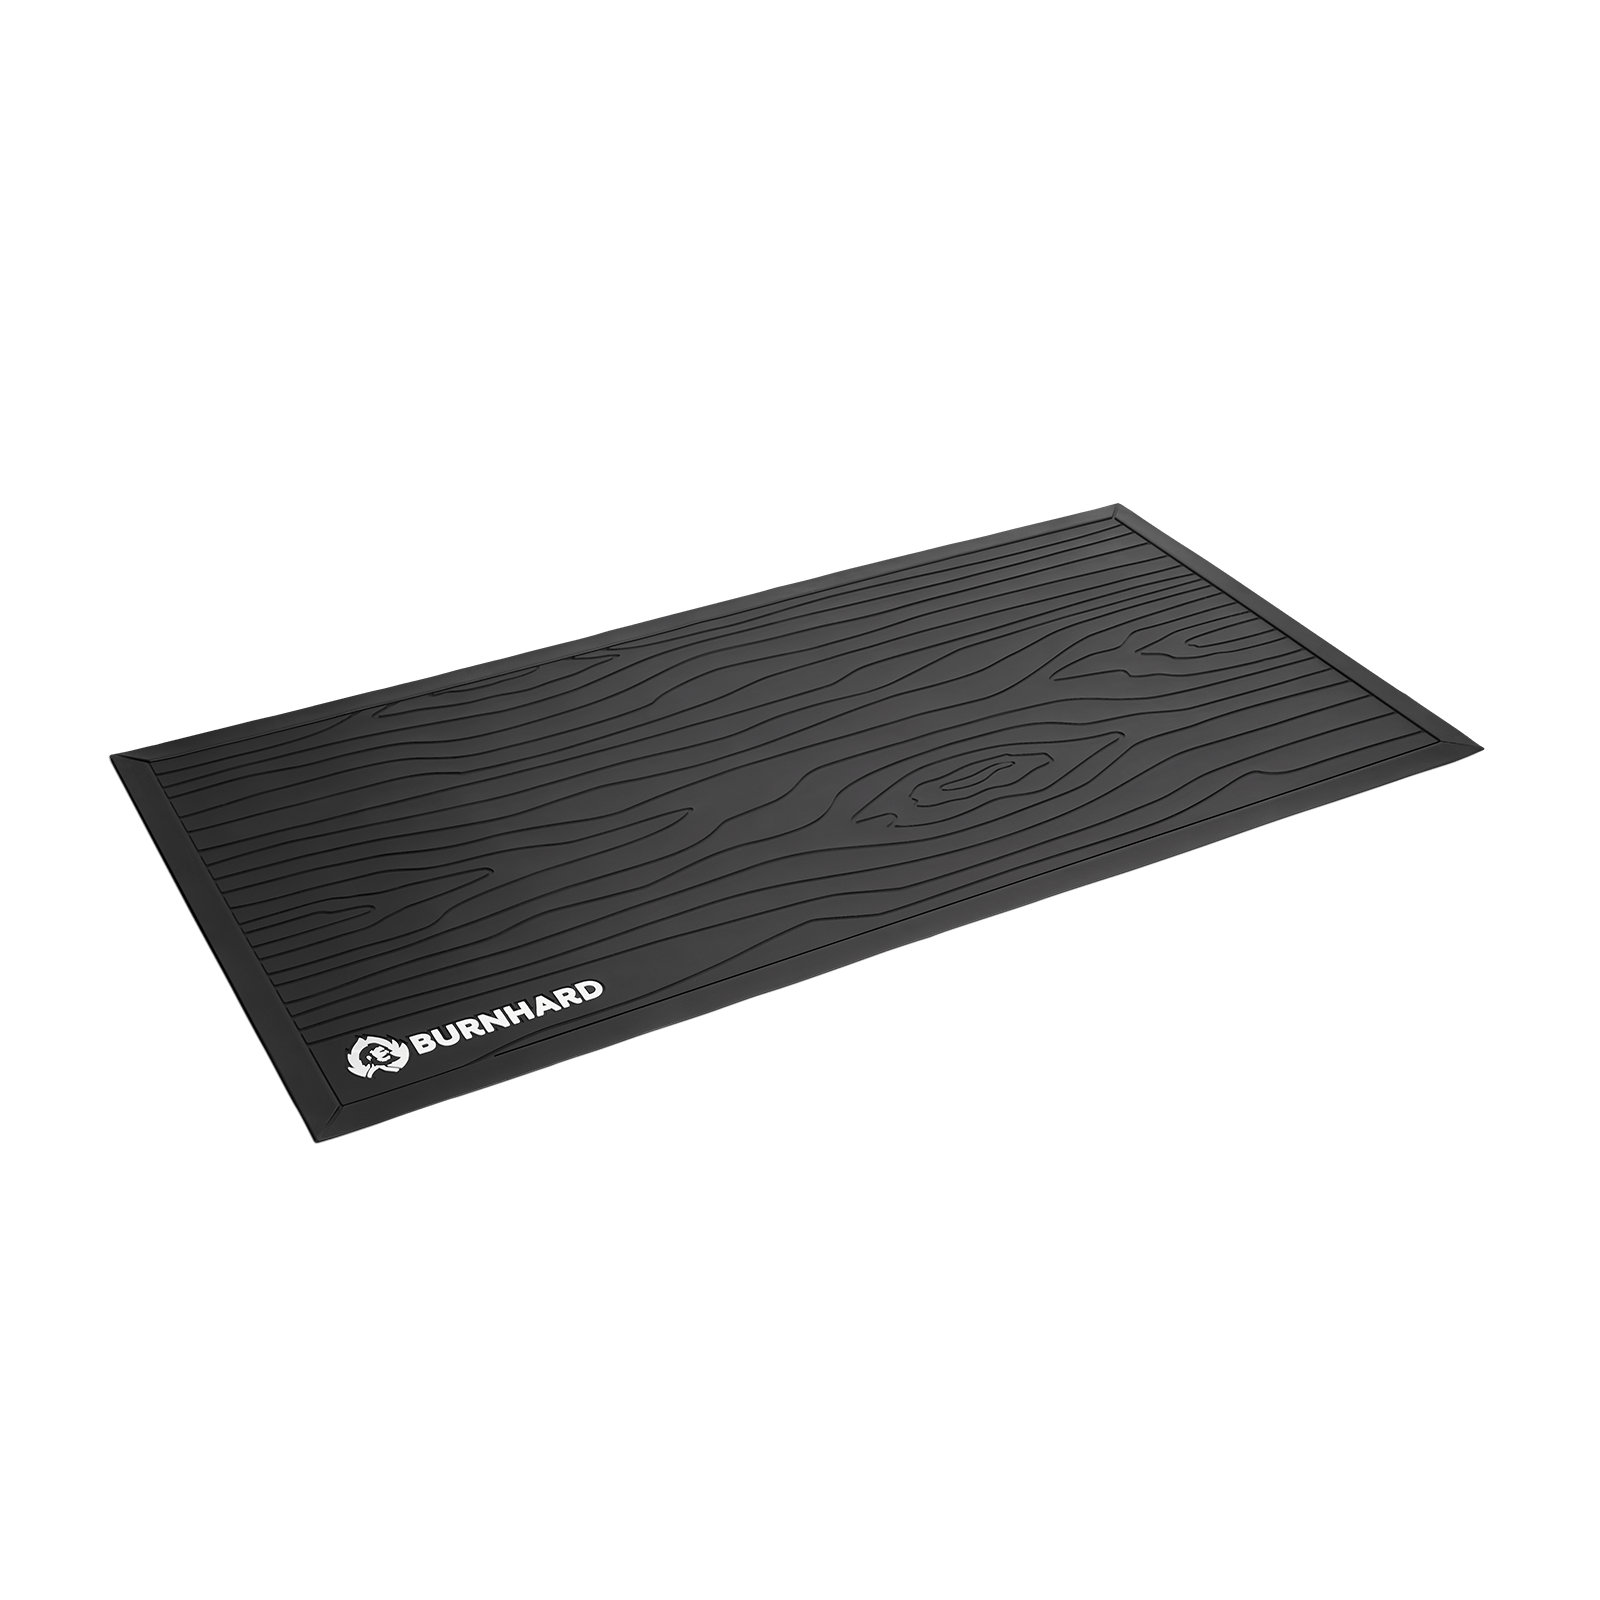 Grillunterlage Bodenschutzmatte aus Soft PVC | Burnhard DE